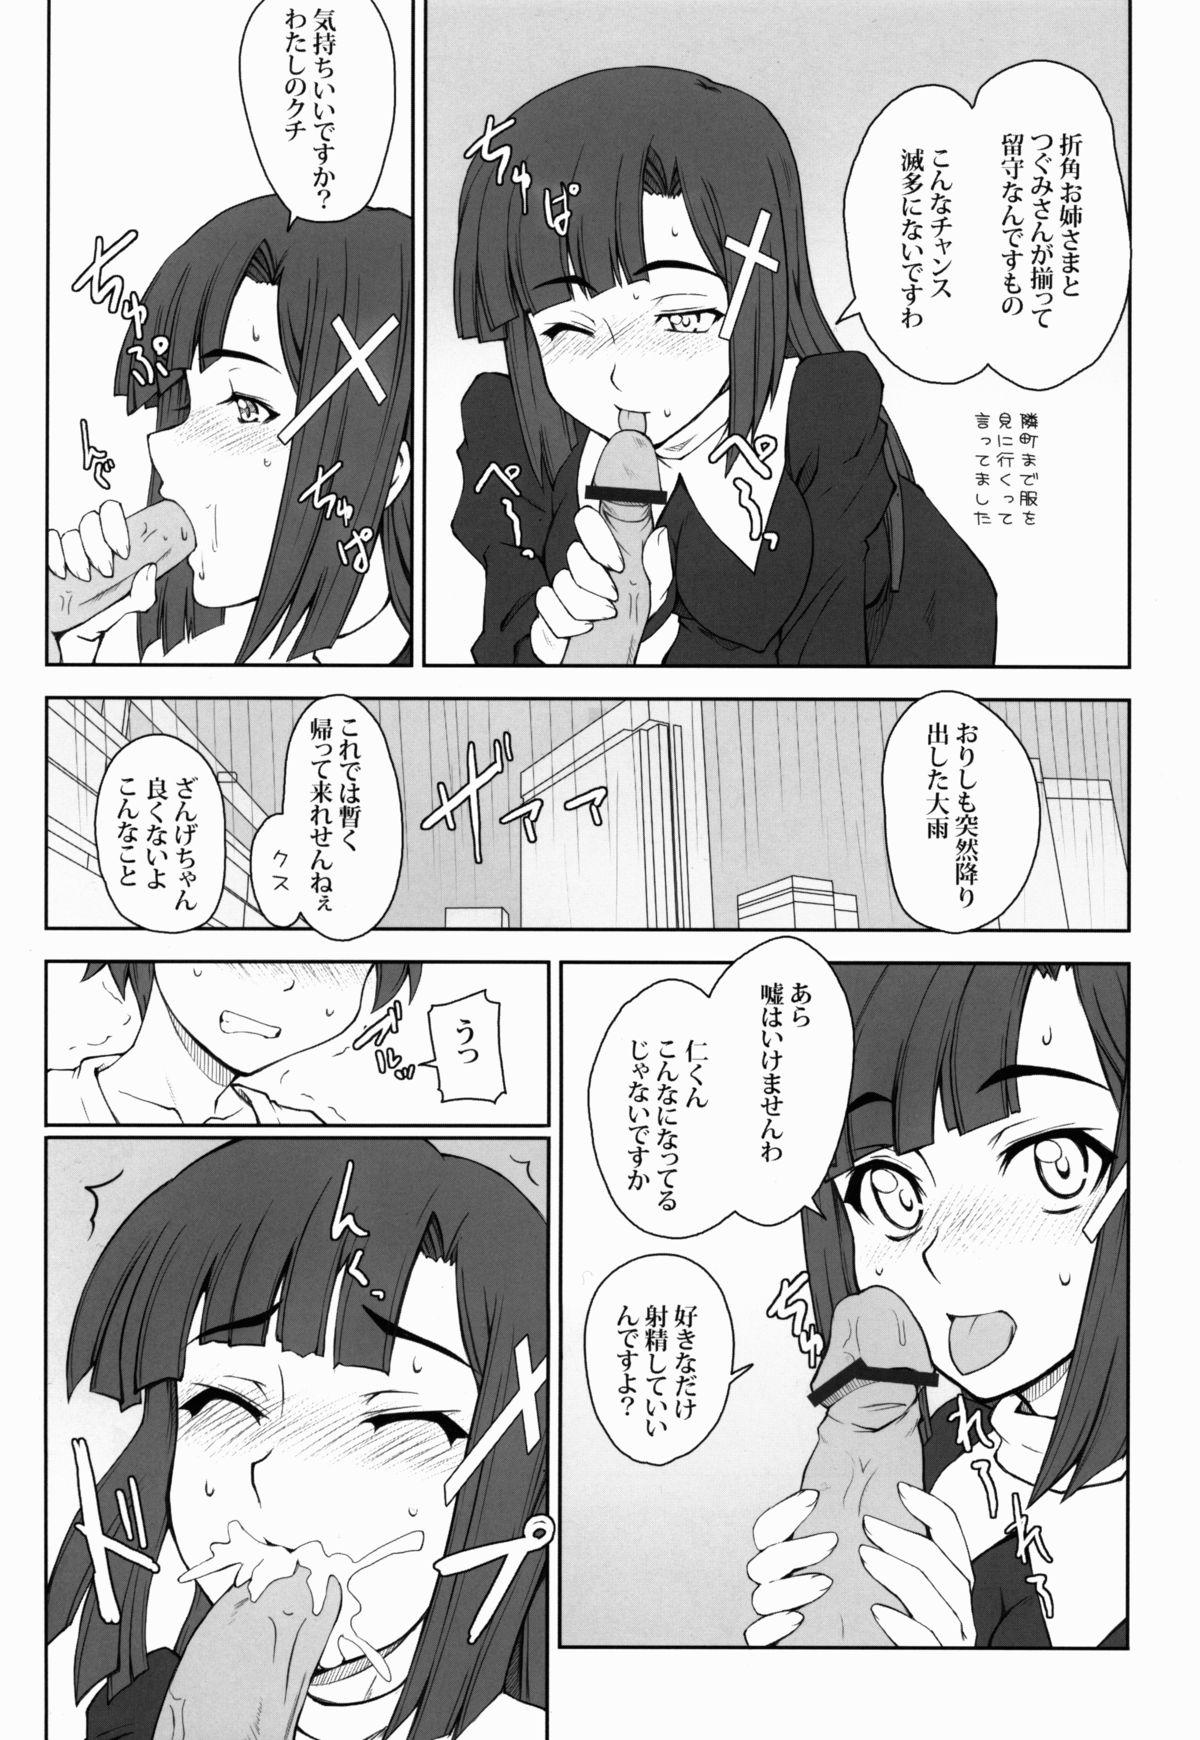 Lips Naisho no Zange Shitsu 1 - Kannagi Classroom - Page 5